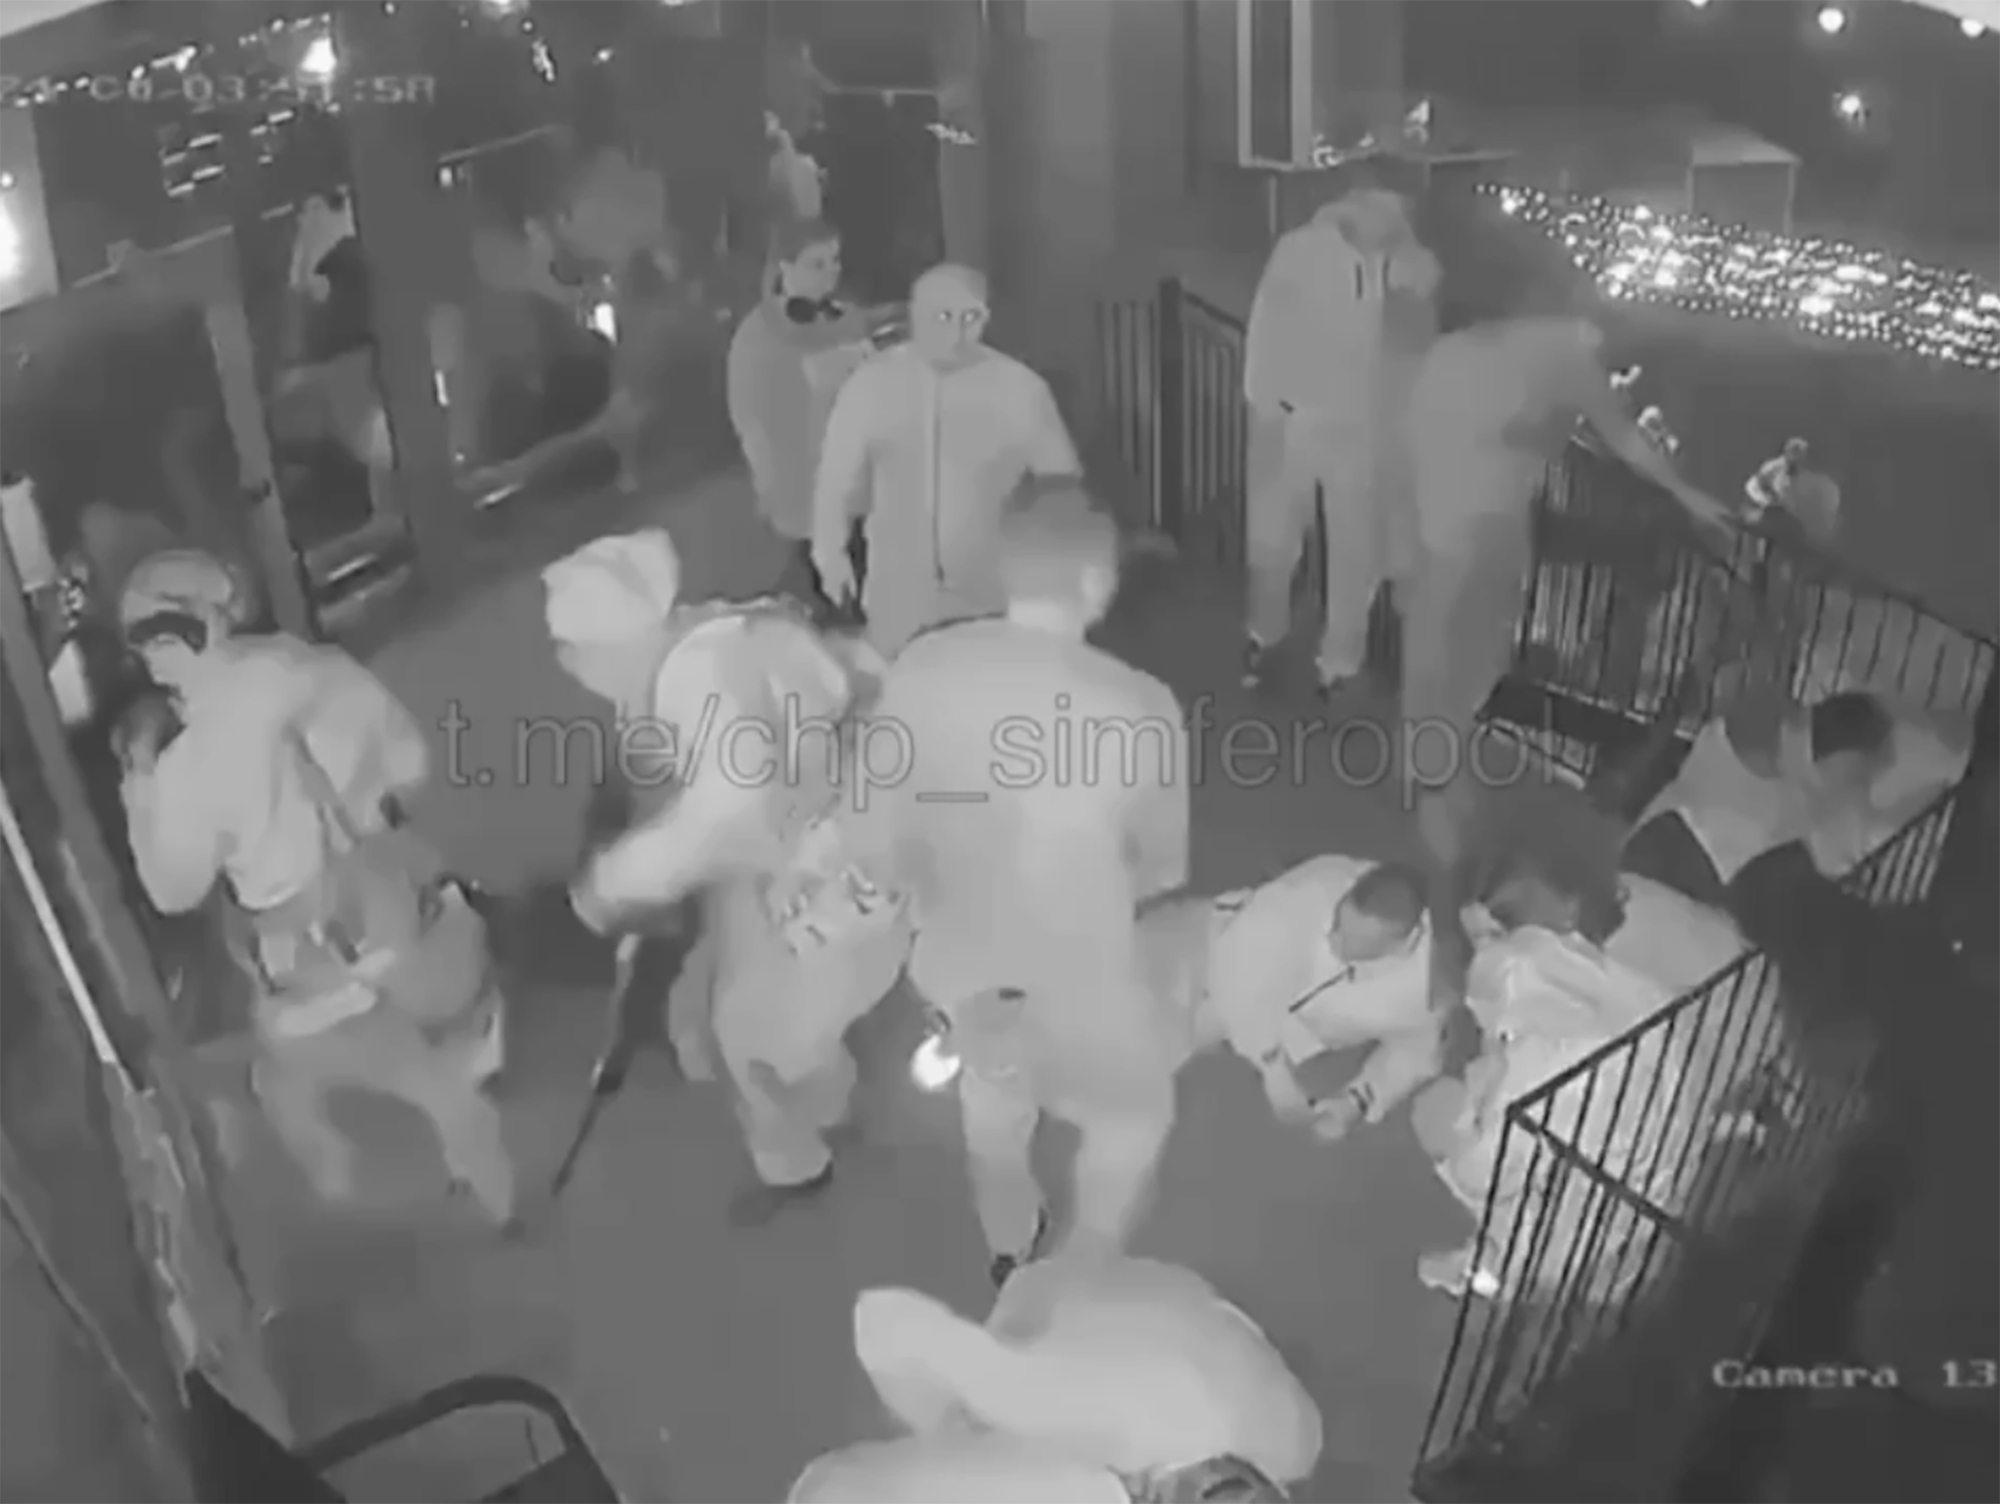 Die Schläger waren angeblich betrunken, als sie die Bürger der Krim angriffen